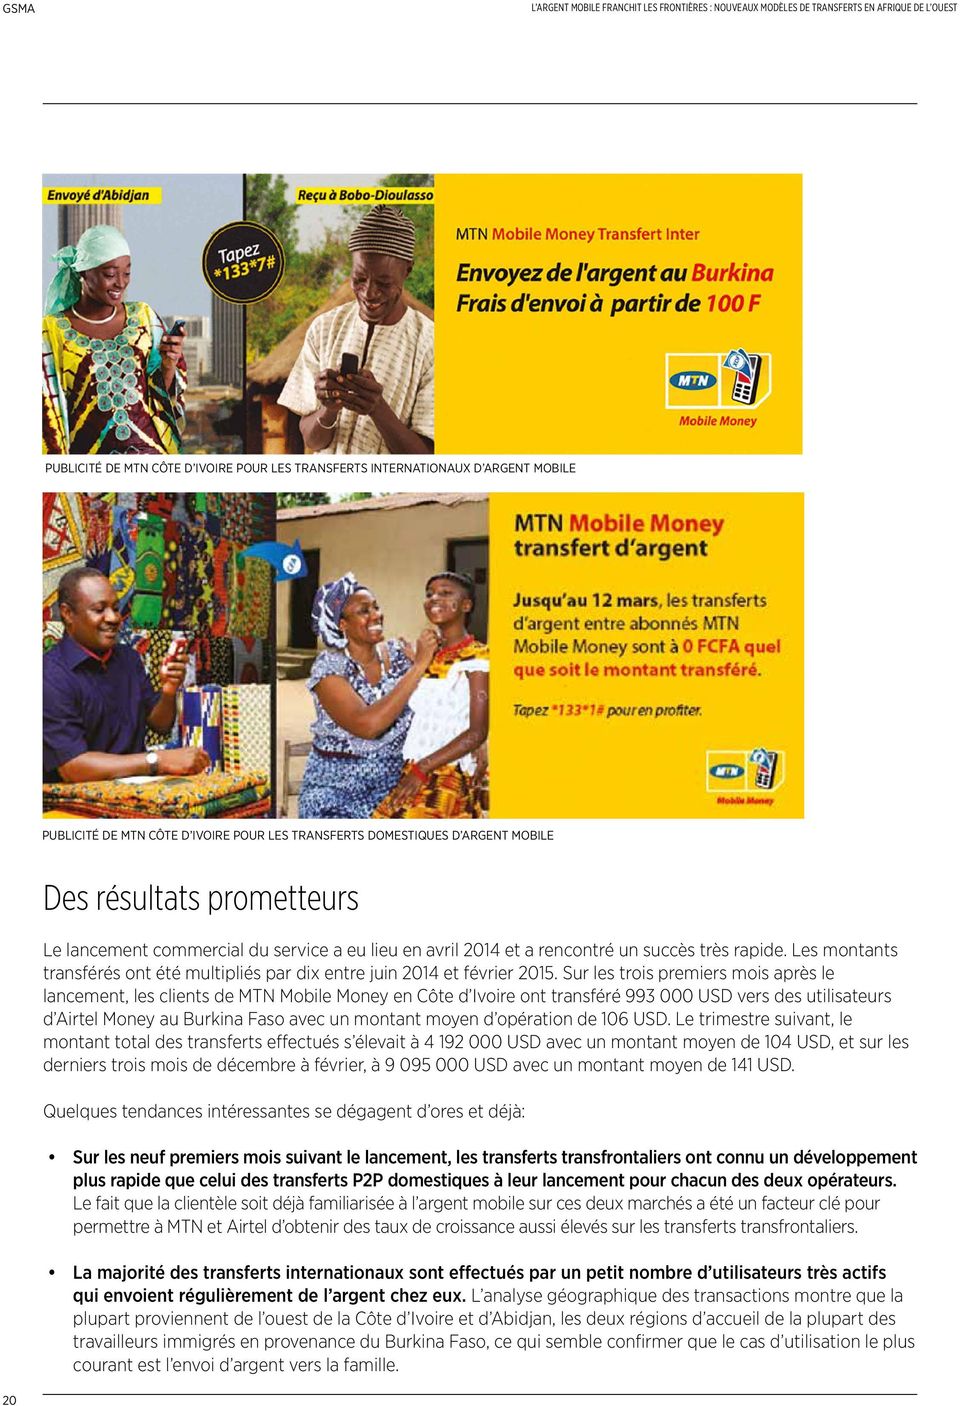 Sur les trois premiers mois après le lancement, les clients de MTN Mobile Money en Côte d Ivoire ont transféré 993 000 USD vers des utilisateurs d Airtel Money au Burkina Faso avec un montant moyen d